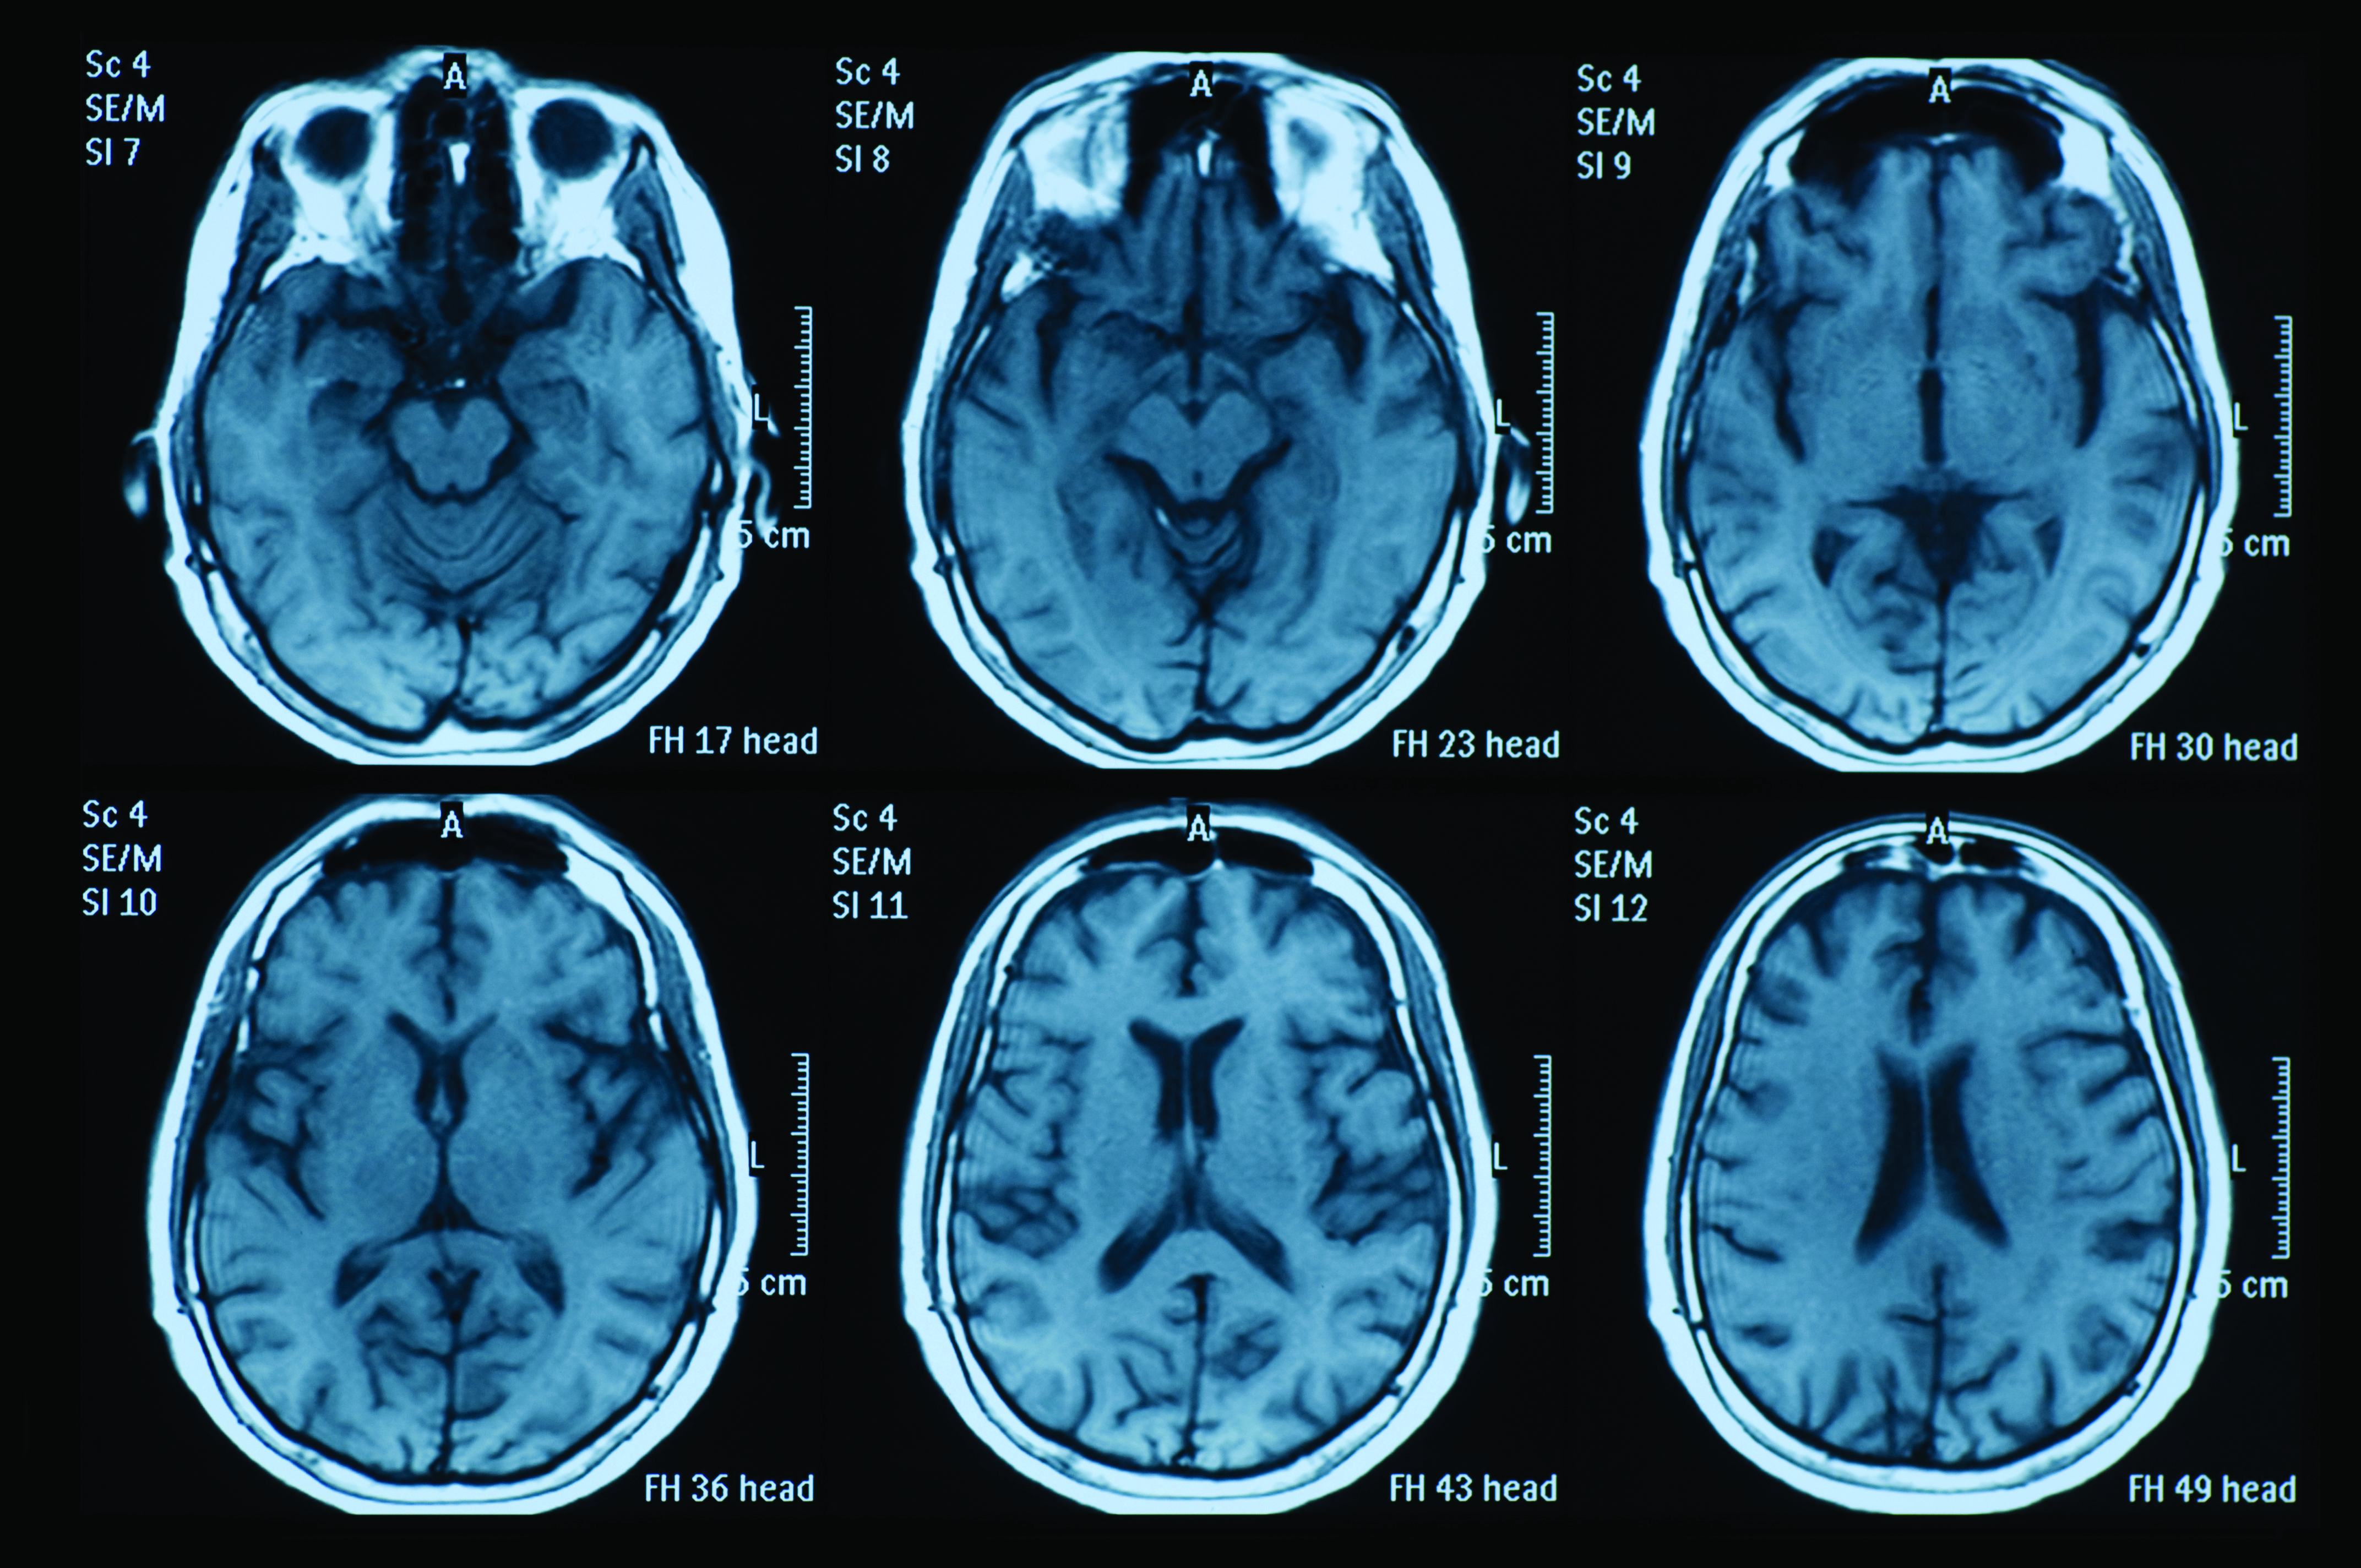 Printout of six MRI brain scans.